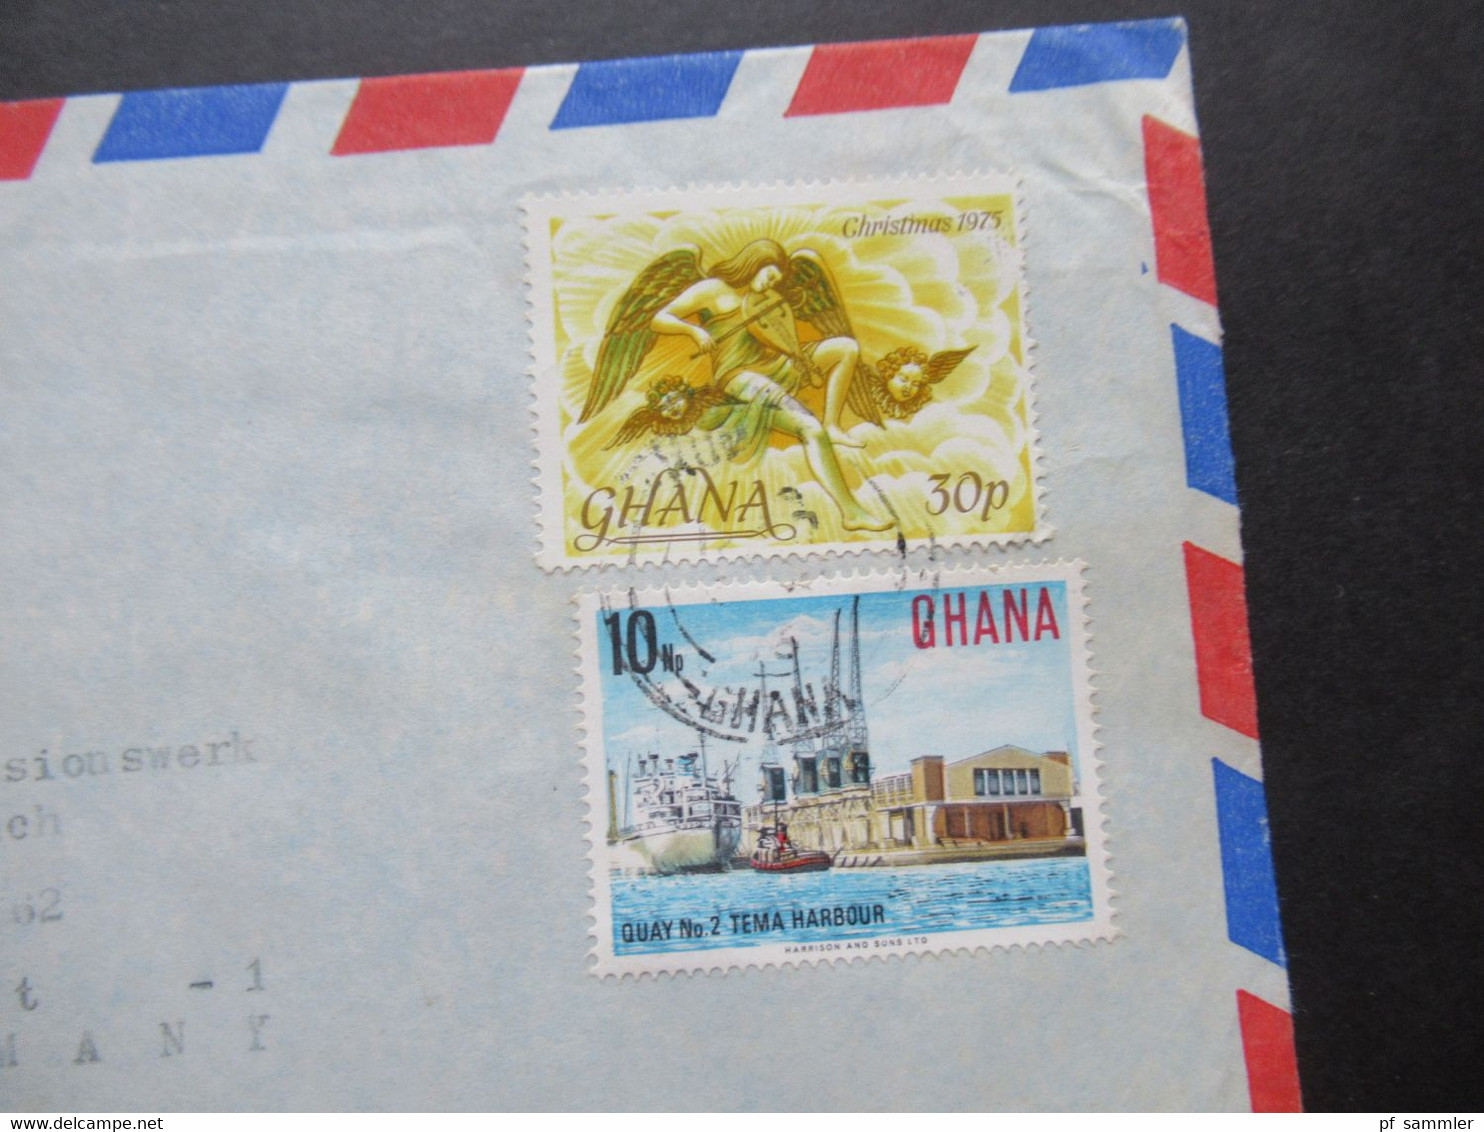 Afrika Ghana kleiner Belegeposten 3 Stück 1970er Jahre / schöne Frankaturen / Air Mail / Luftpost